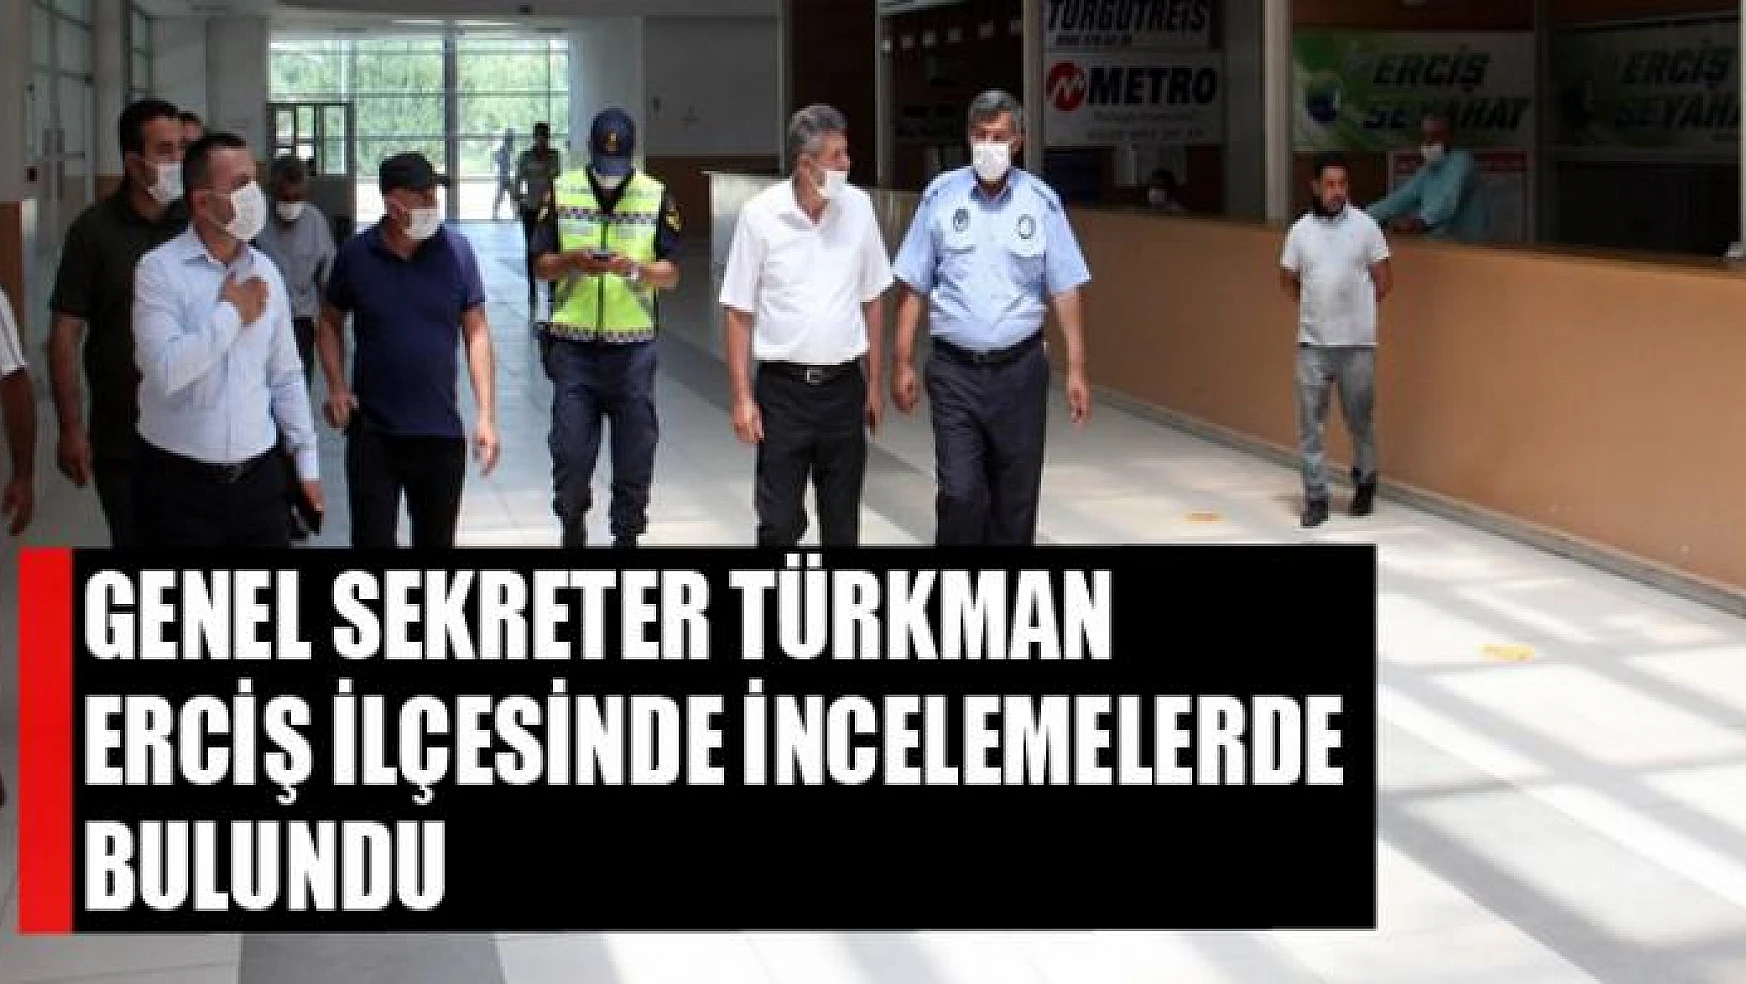 Genel Sekreter Türkman Erciş ilçesinde incelemelerde bulundu